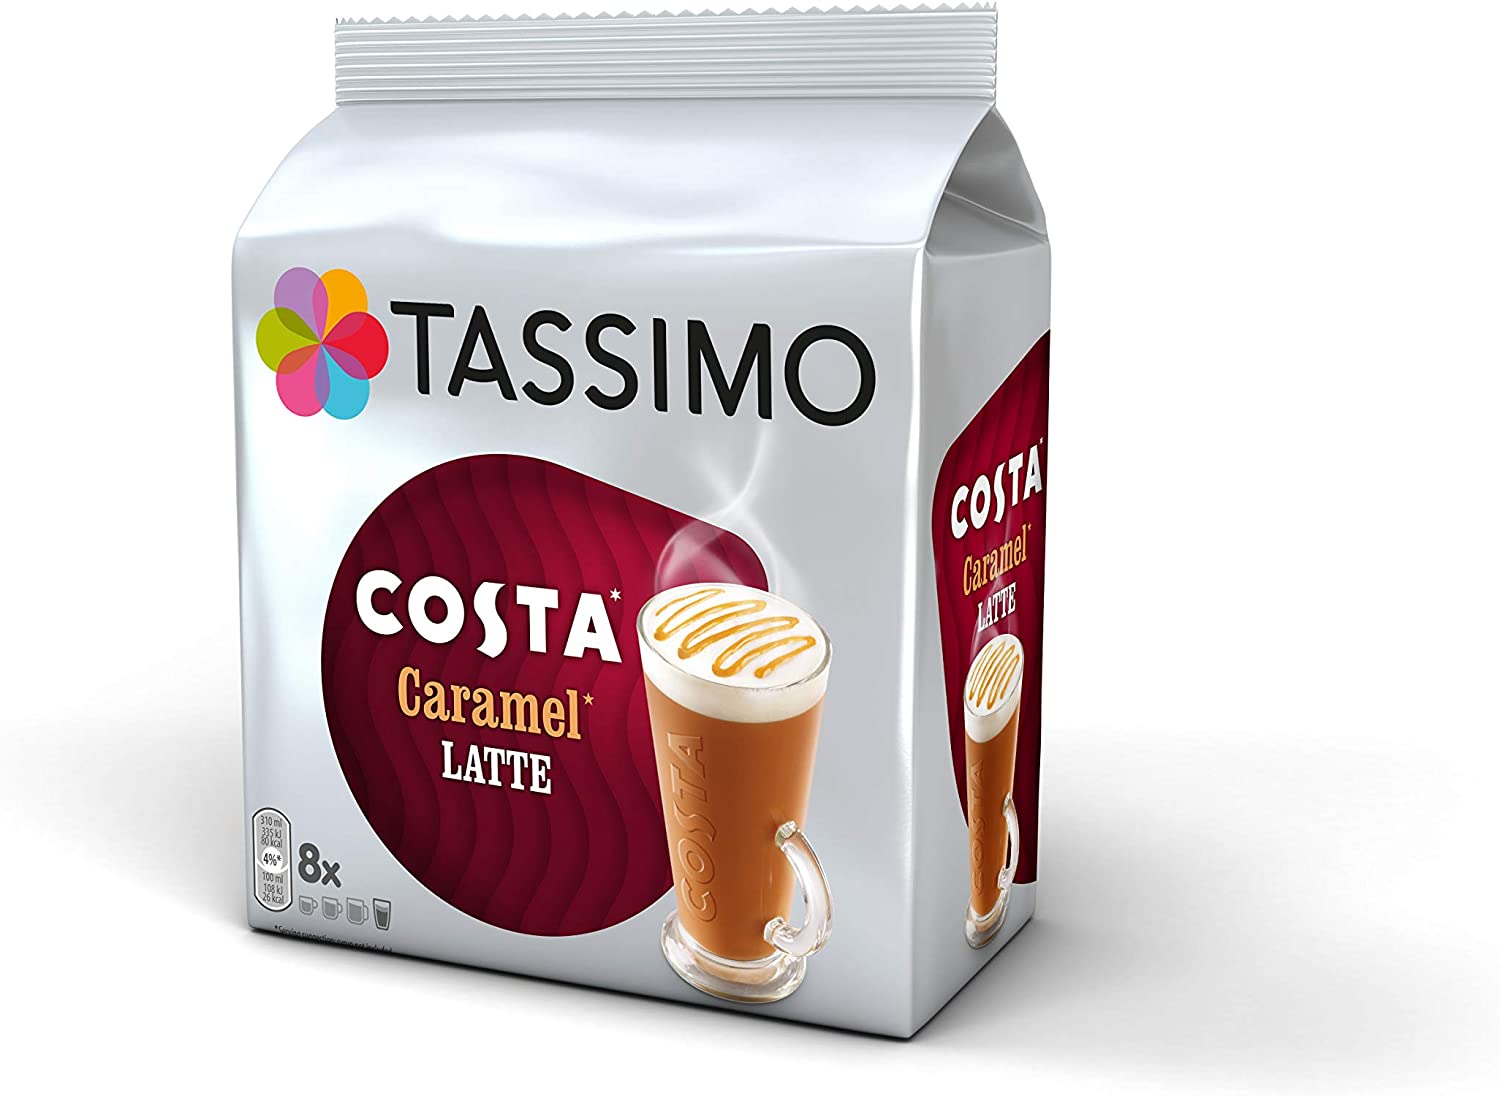 Costa Caramel Latte Tassimo Pods Review — Gourmet Mum